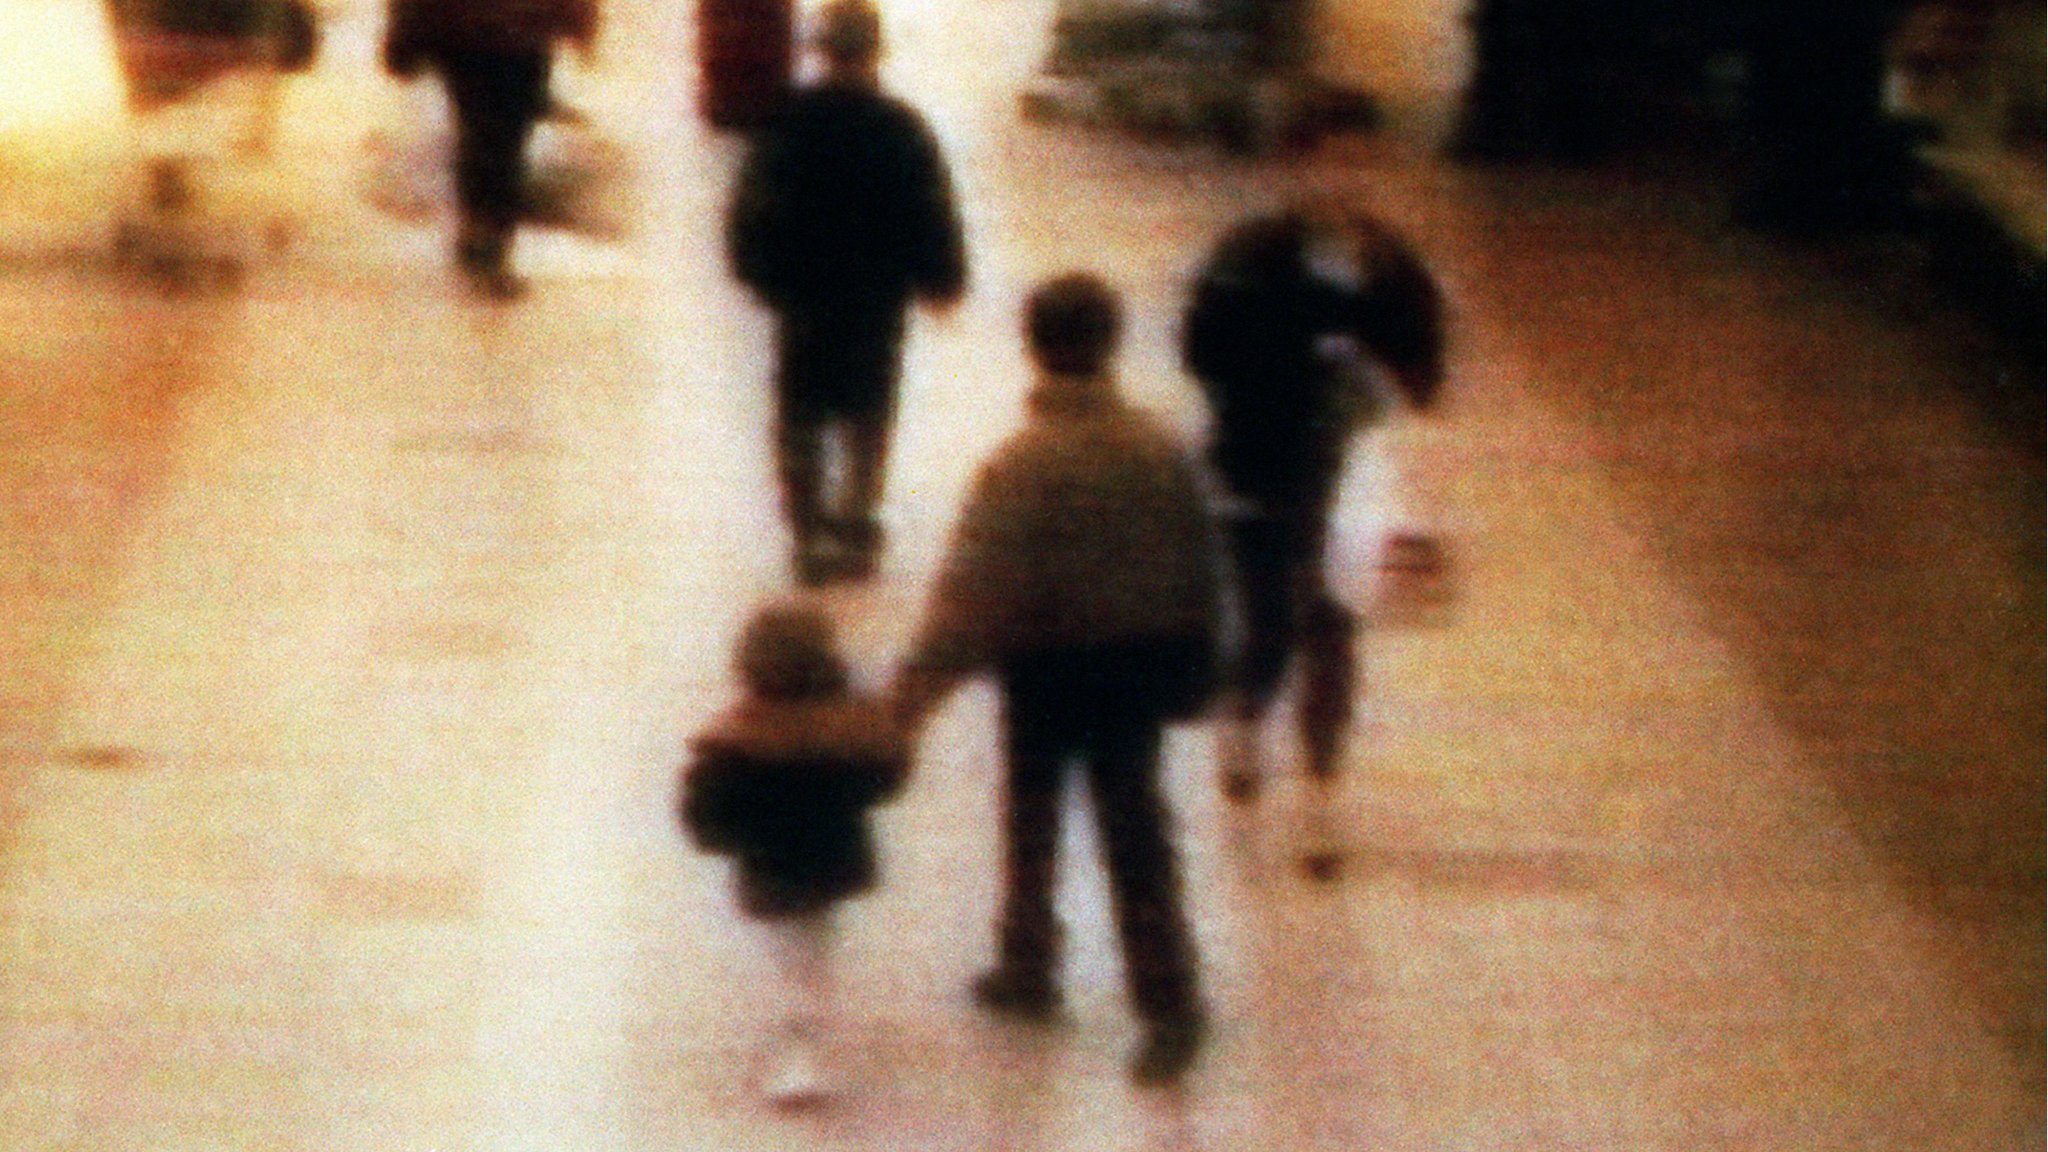 CCTV footage showed Bulger being led away